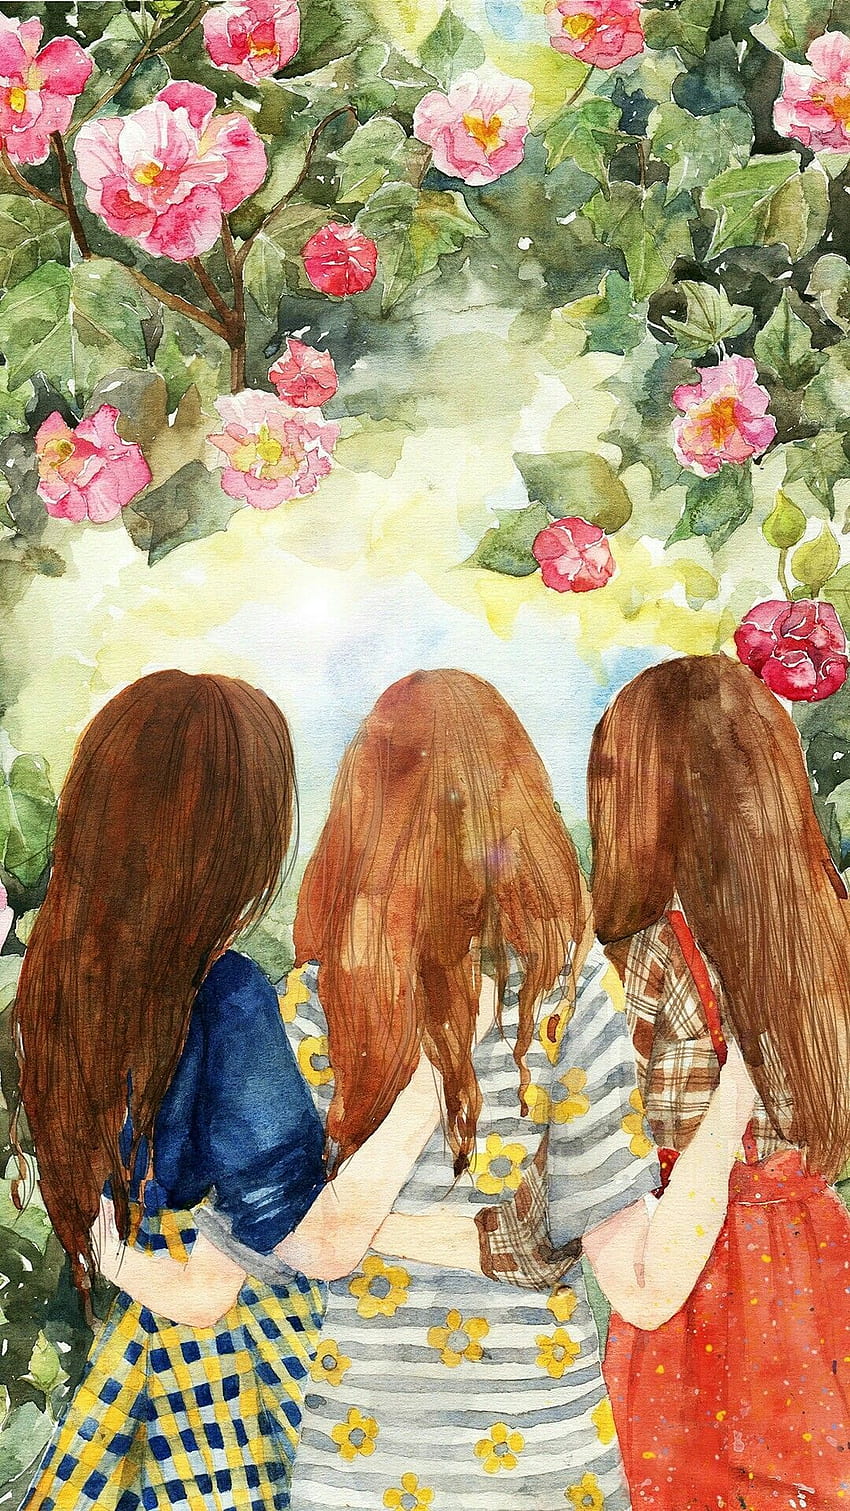 Sisters | Bff | Best friend drawings, Girly drawings, Drawings of friends